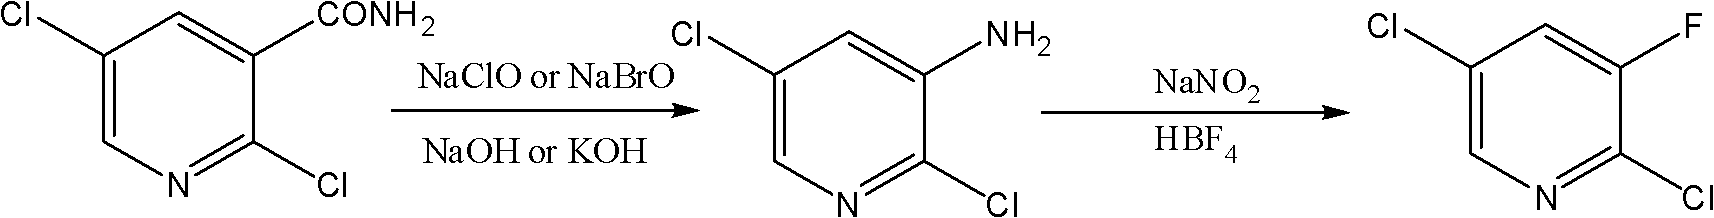 Novel method for synthesizing 2,5-dichloro-3-fluoropyridine